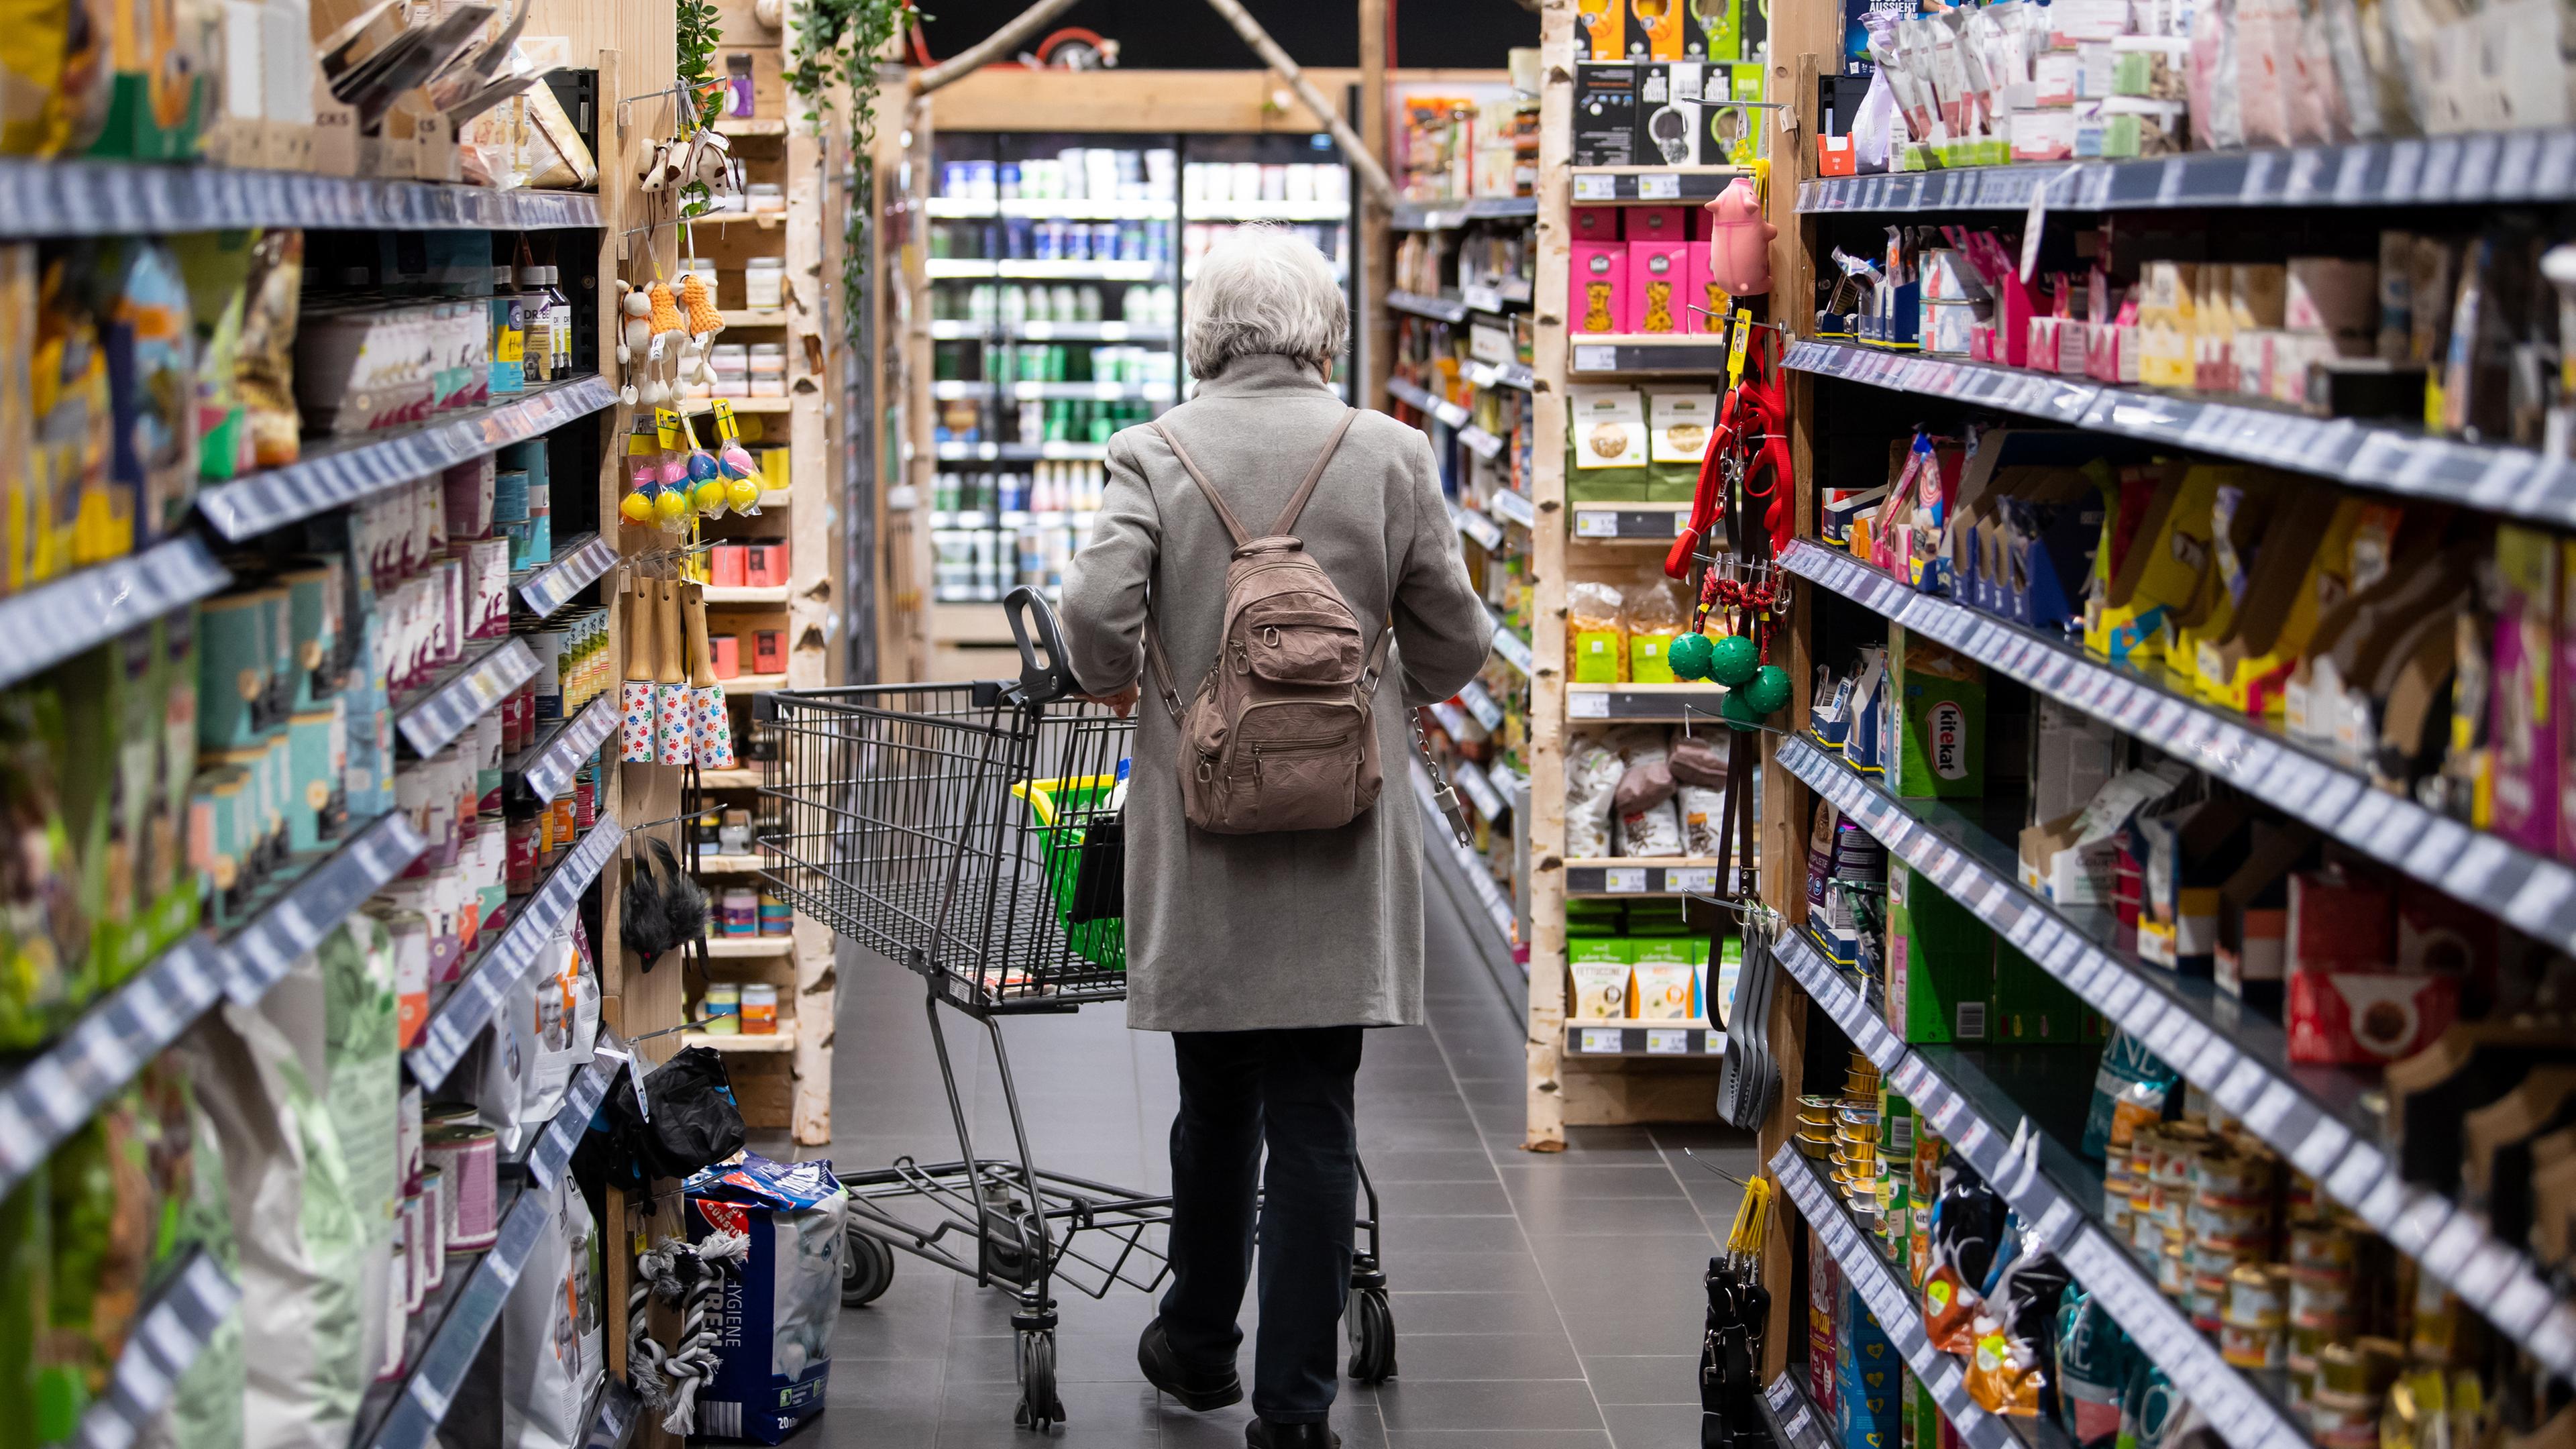 Archiv: Frau im Supermarkt mit Einkaufswagen